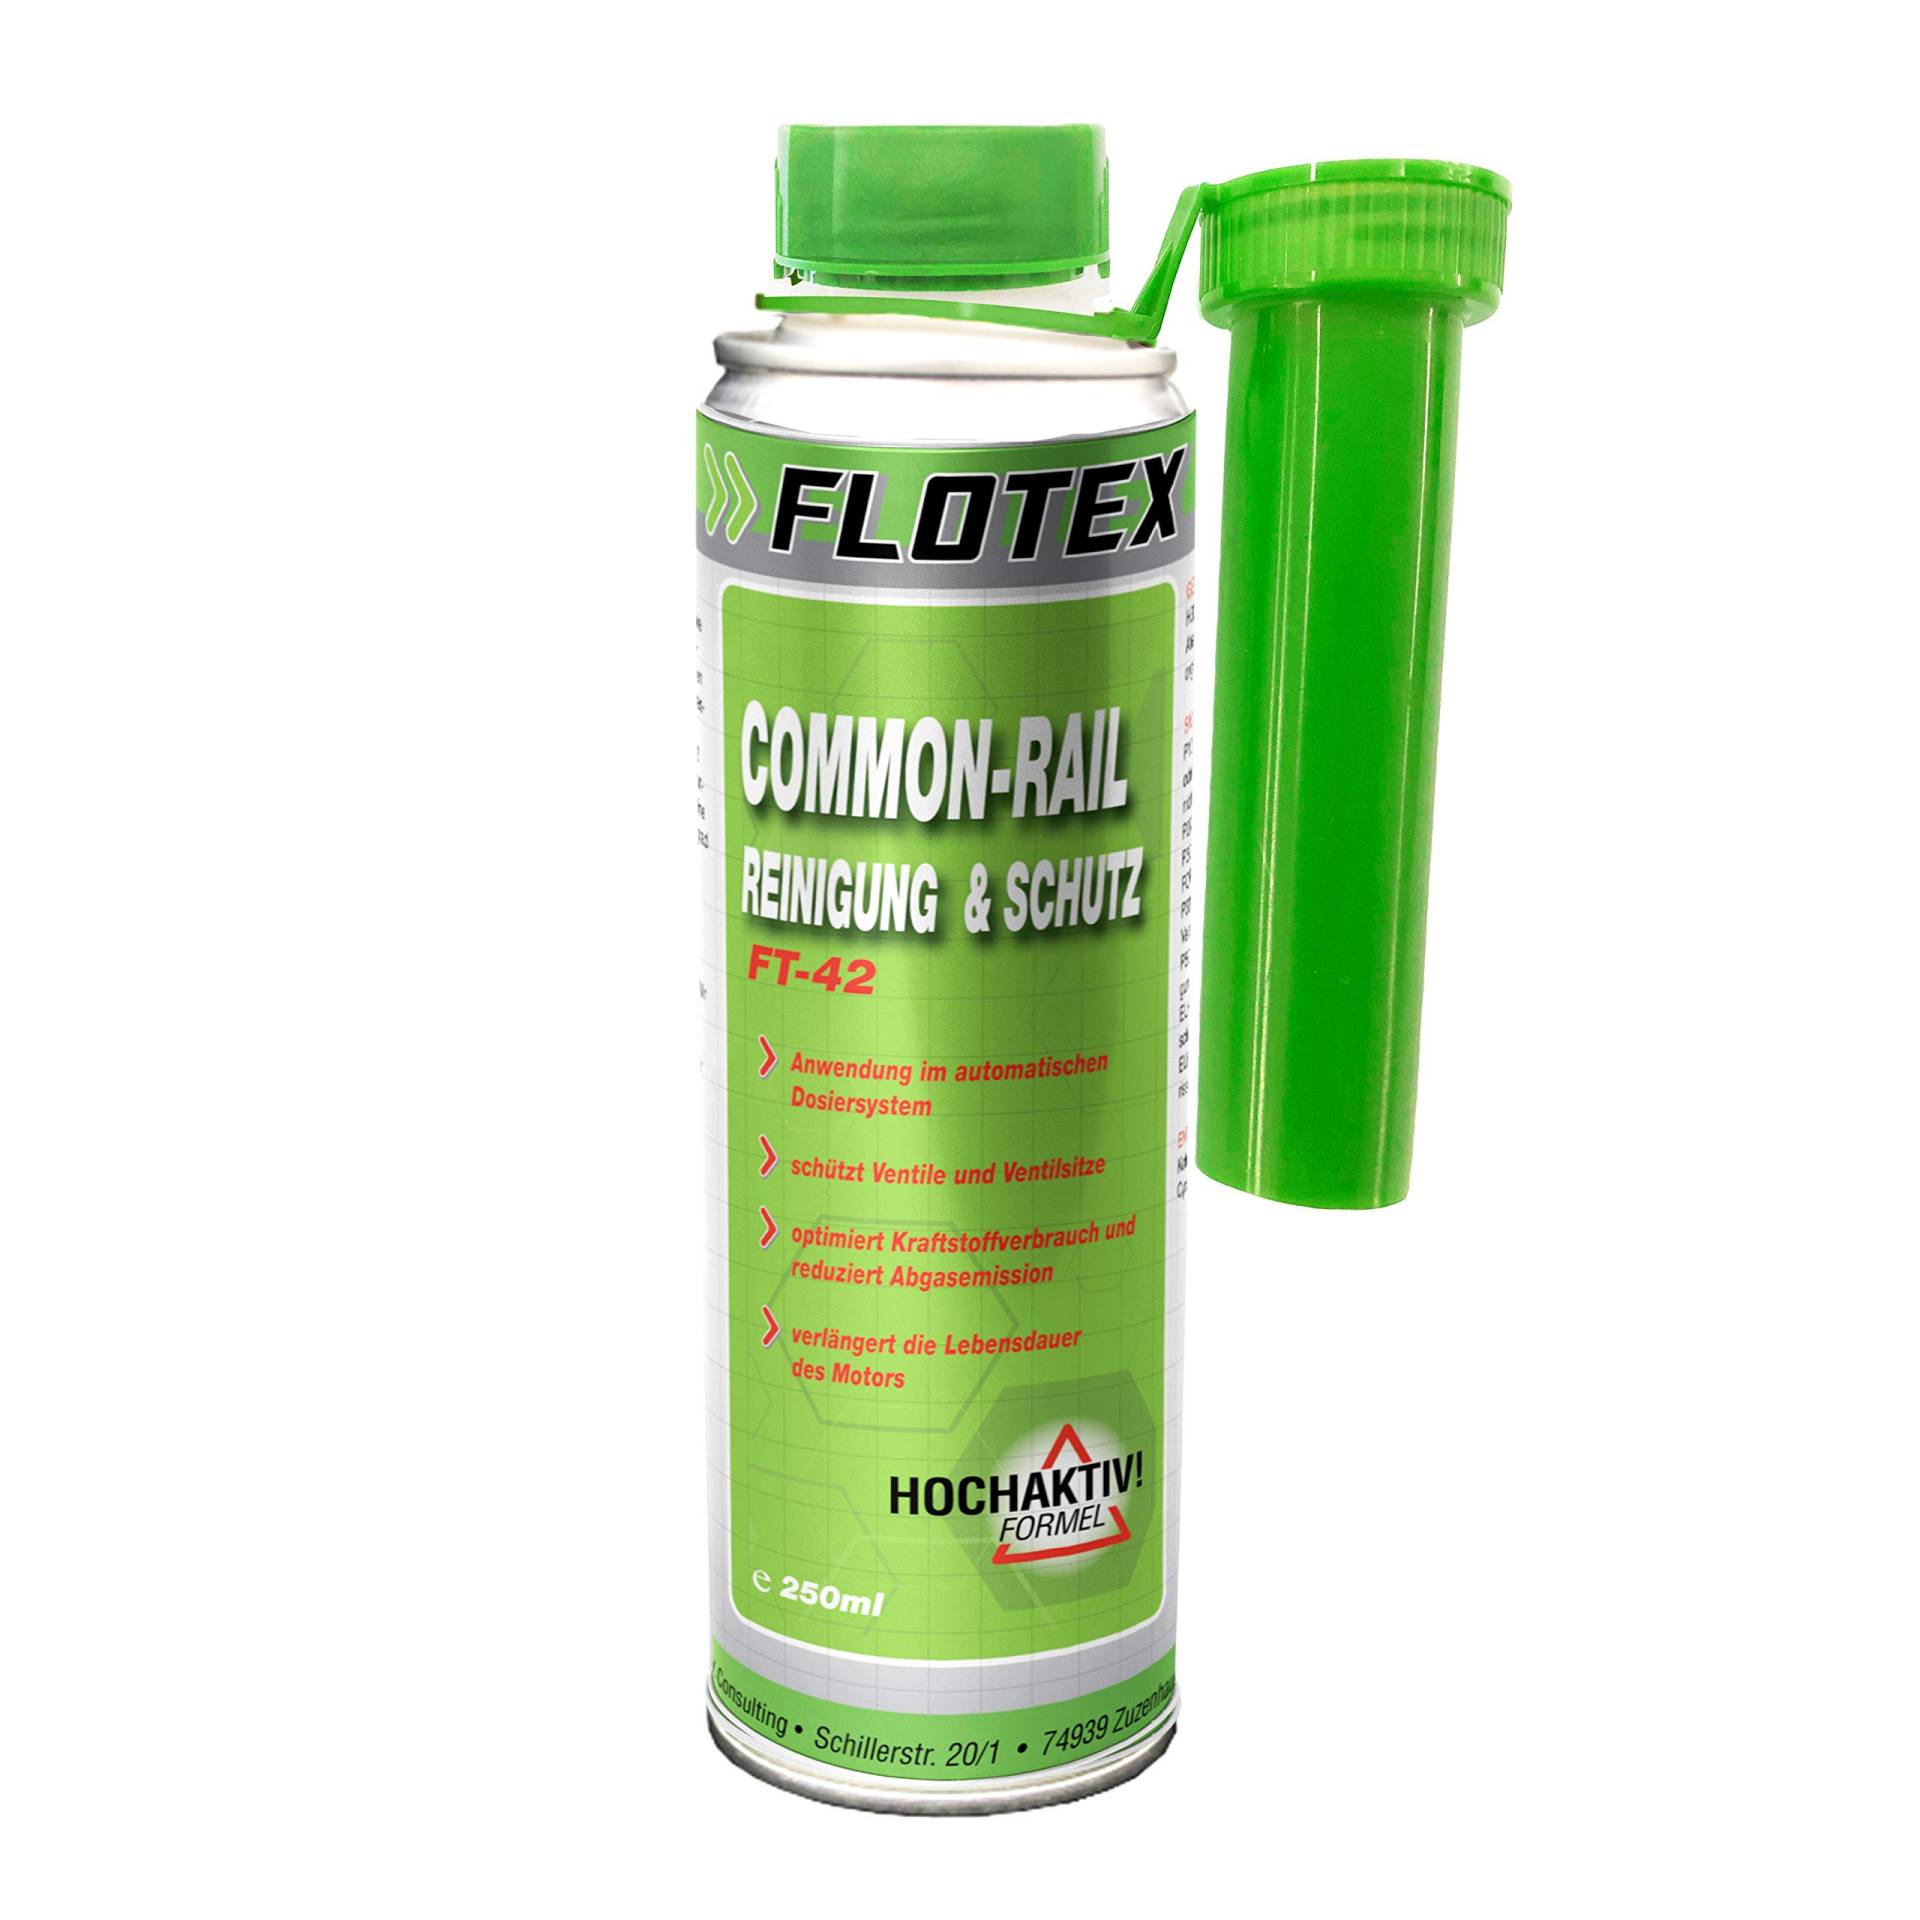 Flotex Diesel Common-Rail Reinigung & Schutz, 250ml Systemreiniger und Schutz Additiv für Dieselmotoren von Flotex